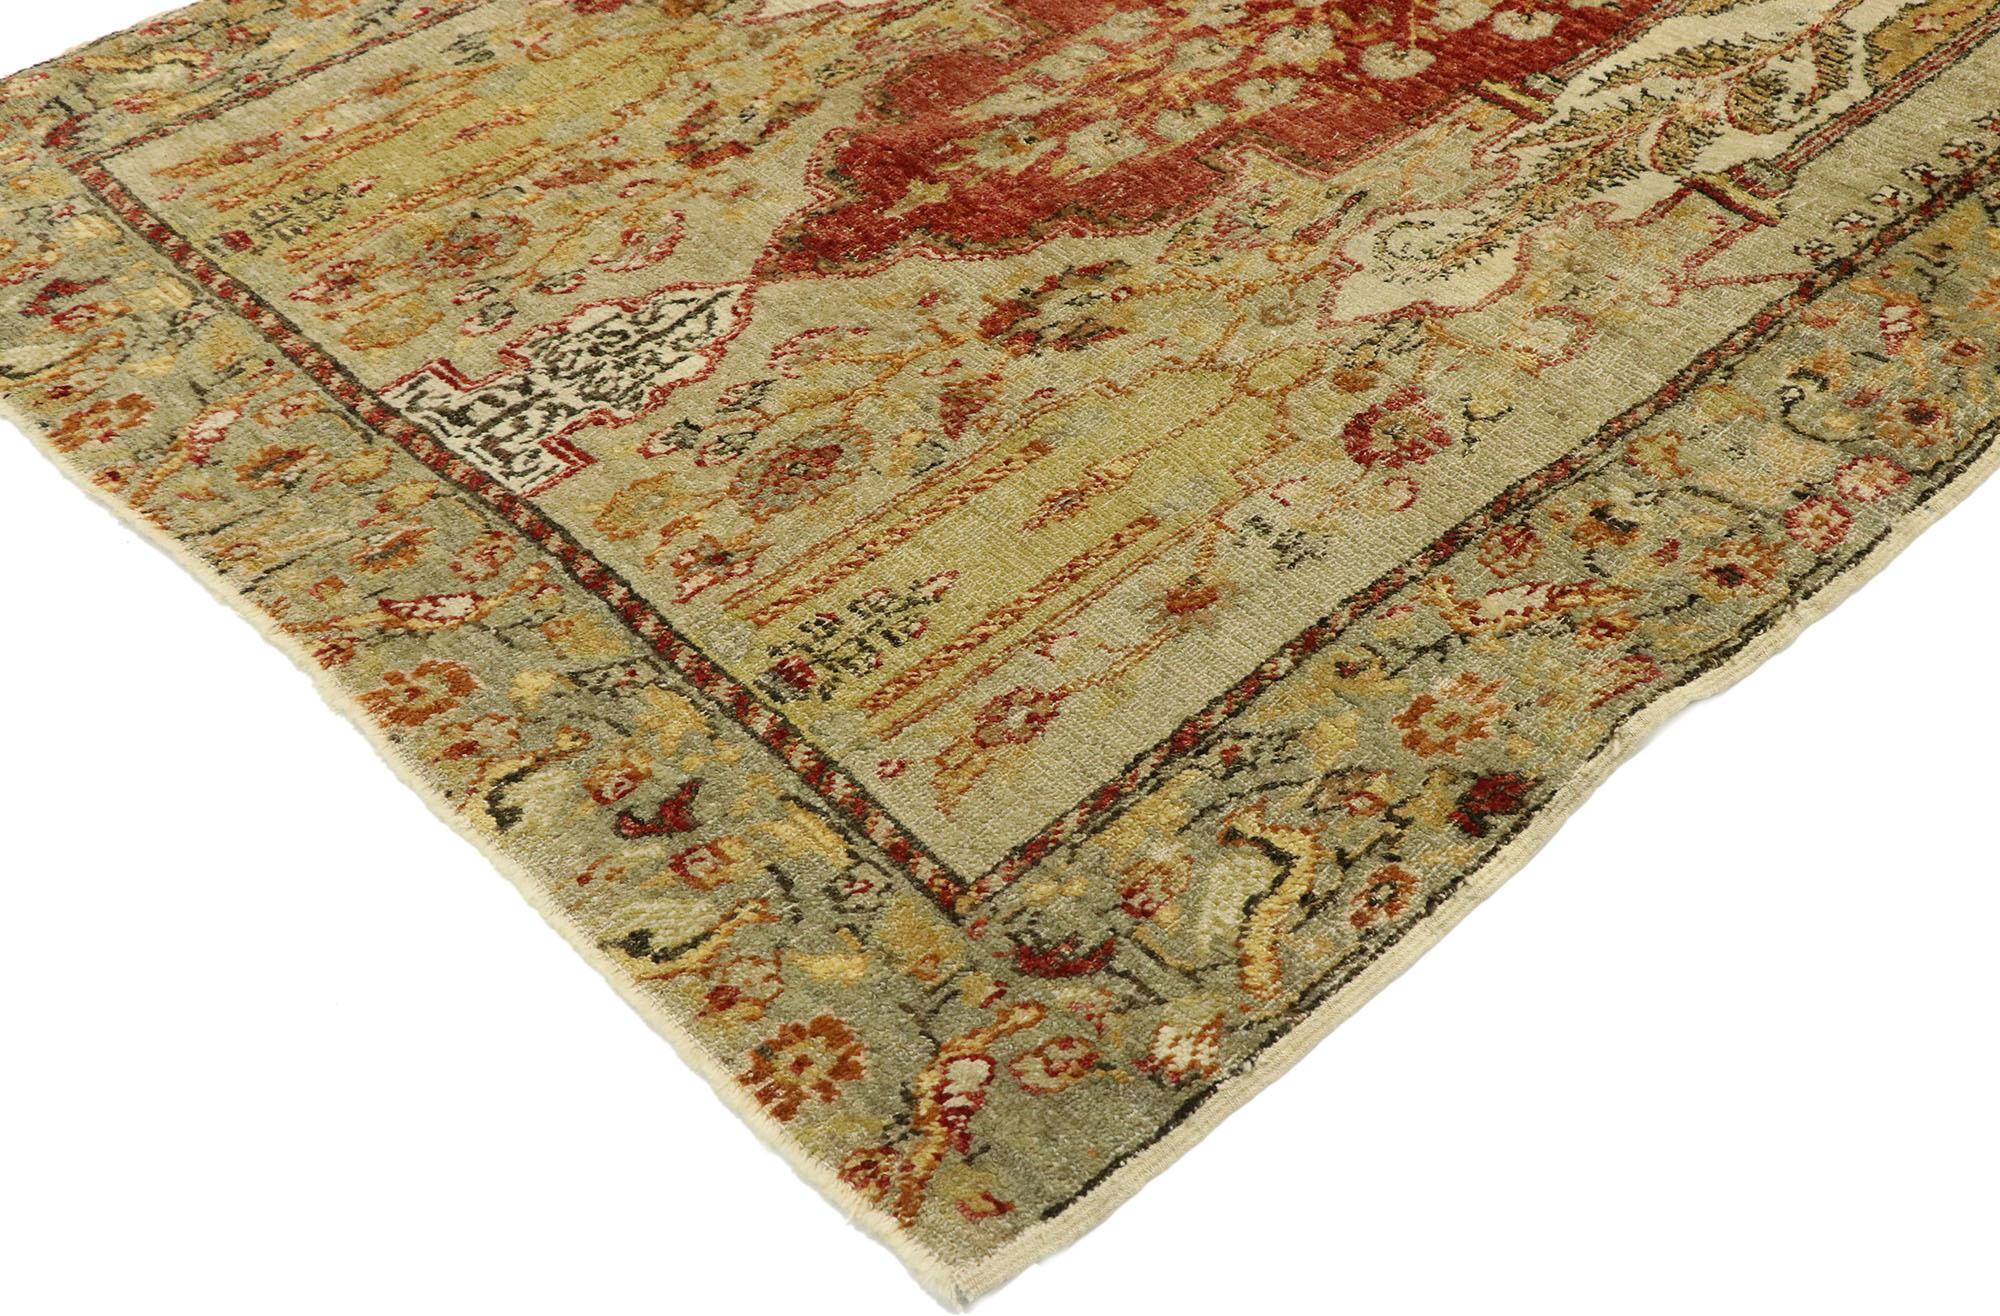 53071, tapis de prière turc Oushak vintage, style rustique toscan. Imprégné de teintes inspirées de la terre et d'éléments architecturaux de formes naturalistes, ce tapis Oushak turc vintage en laine noué à la main incarne à merveille le style